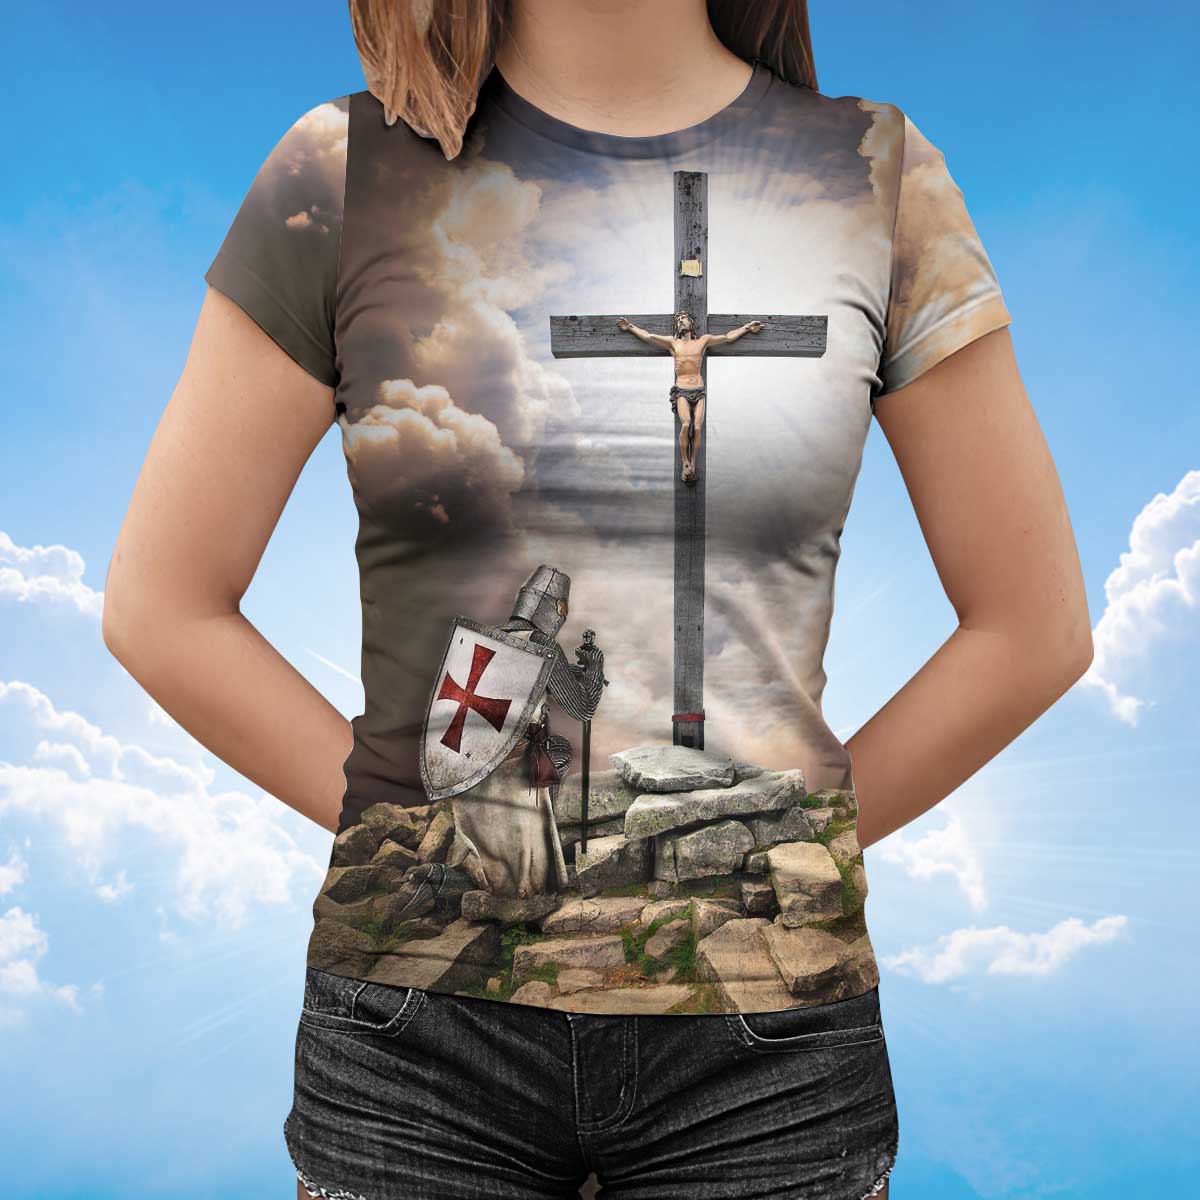 Knight Templar Kneel Before Jesus T Shirt Templar Lover Shirts Men Women